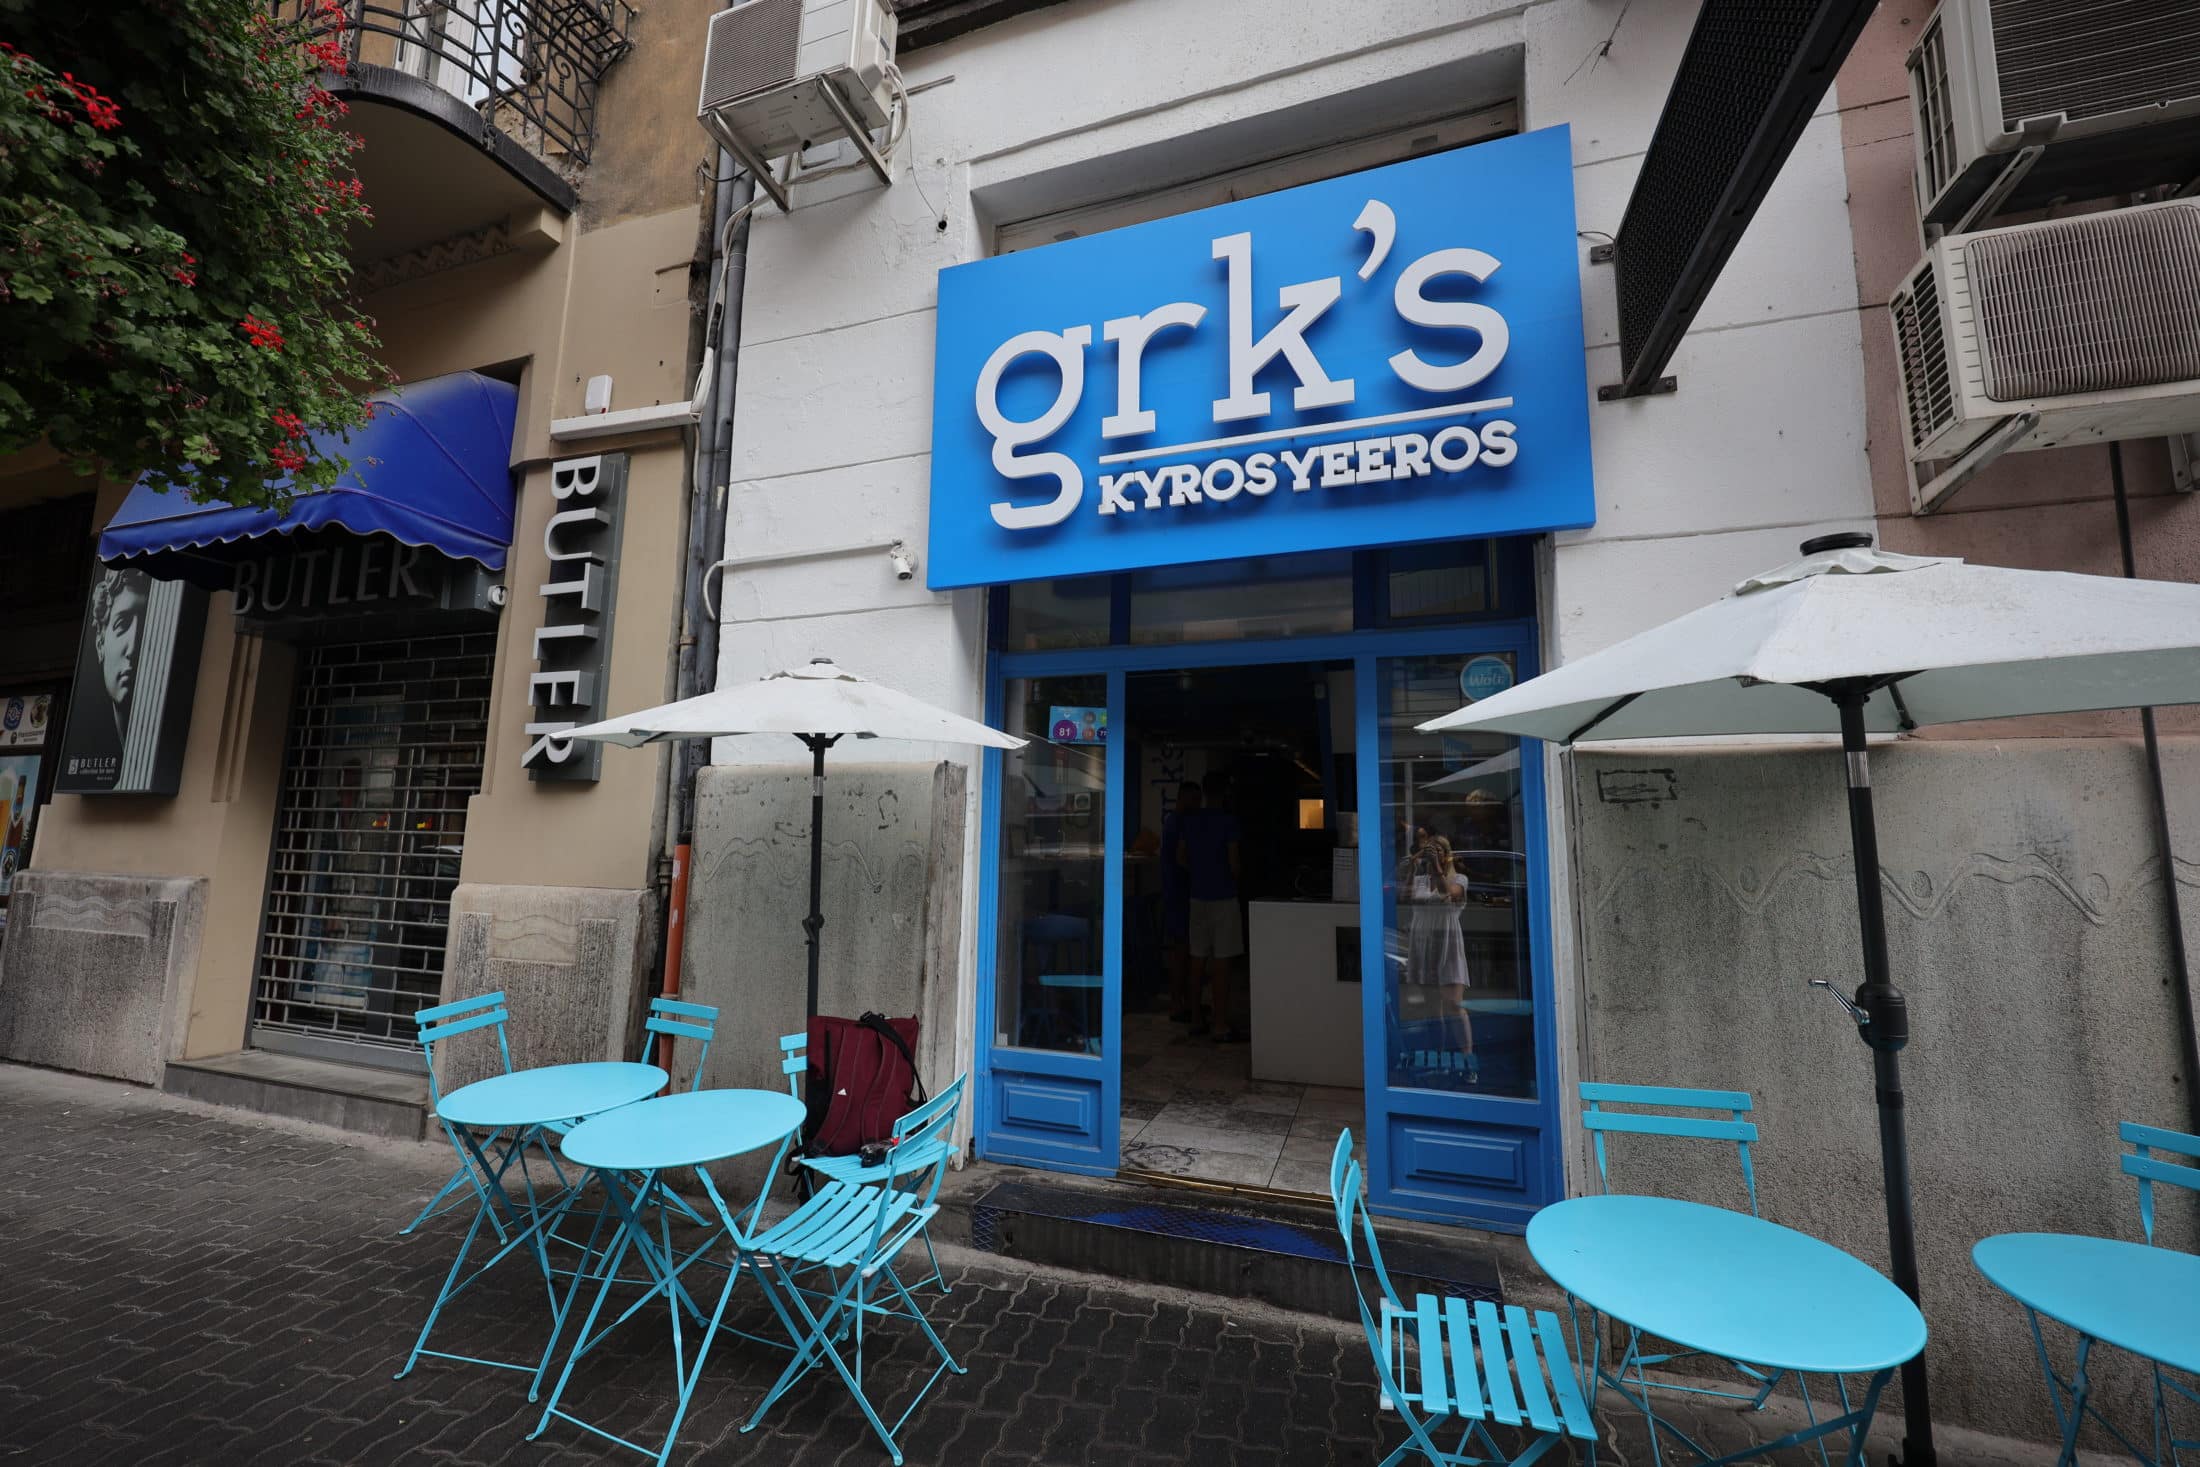 grk-s-kyros-yeeros (2)